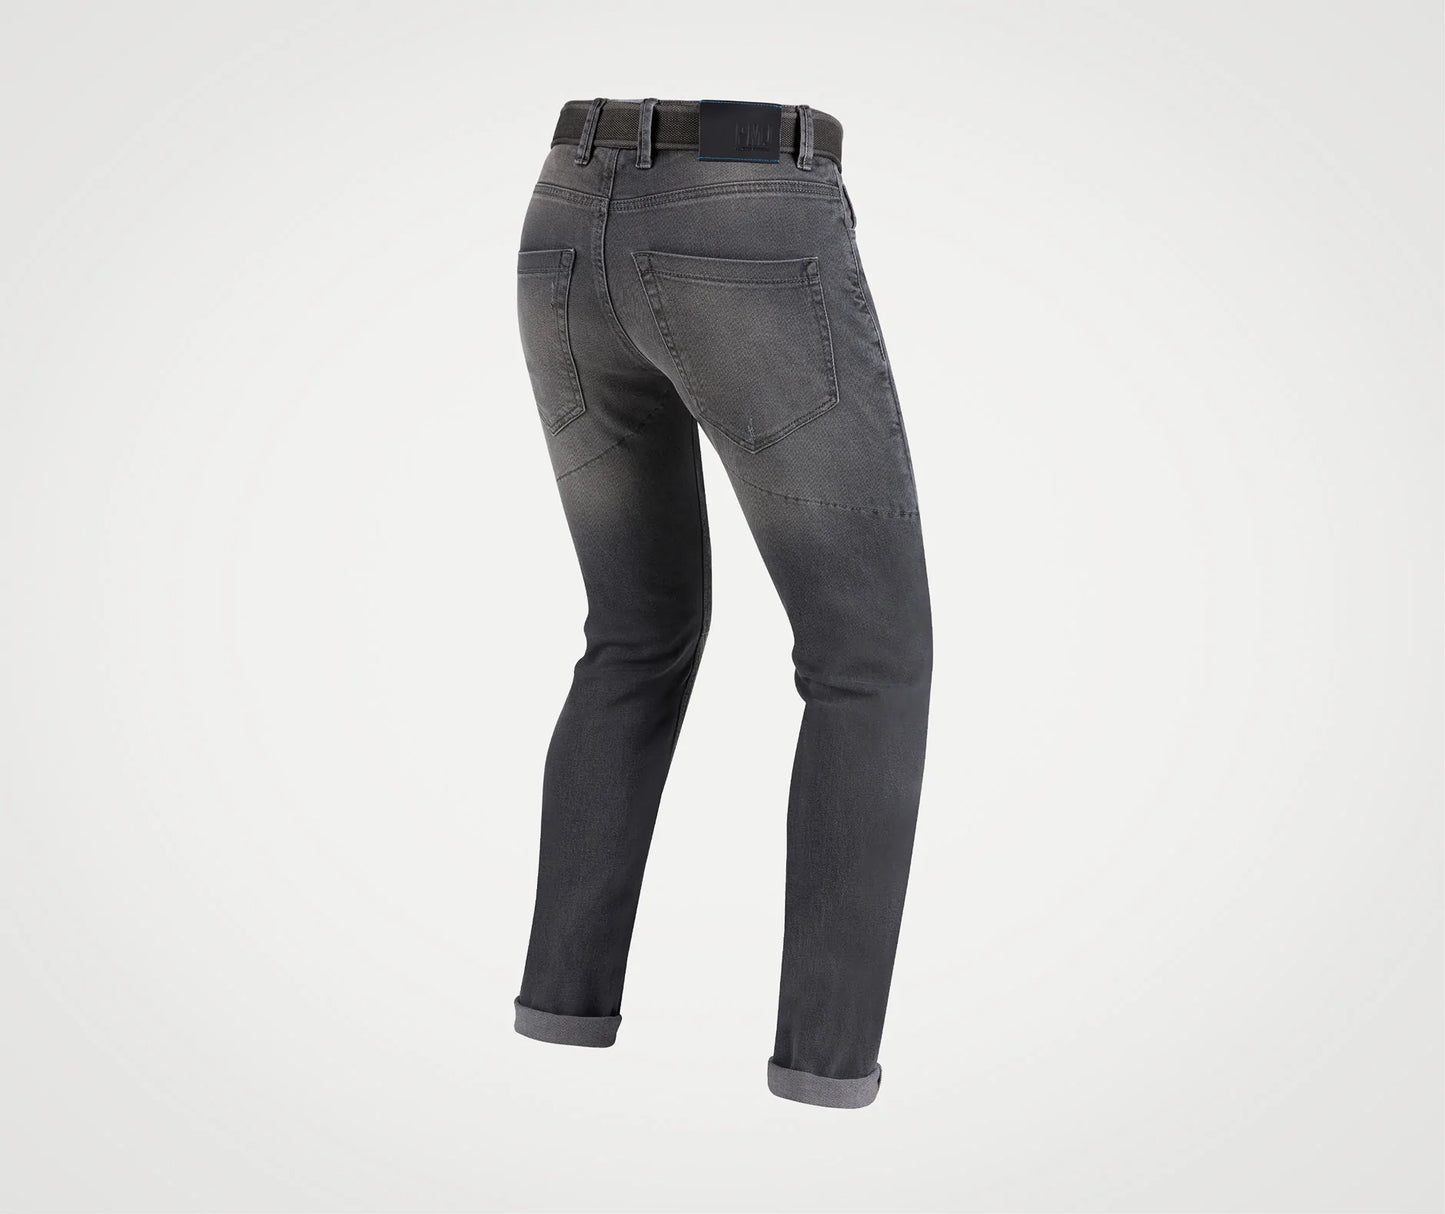 PMJ Jeans Caferacer Grey